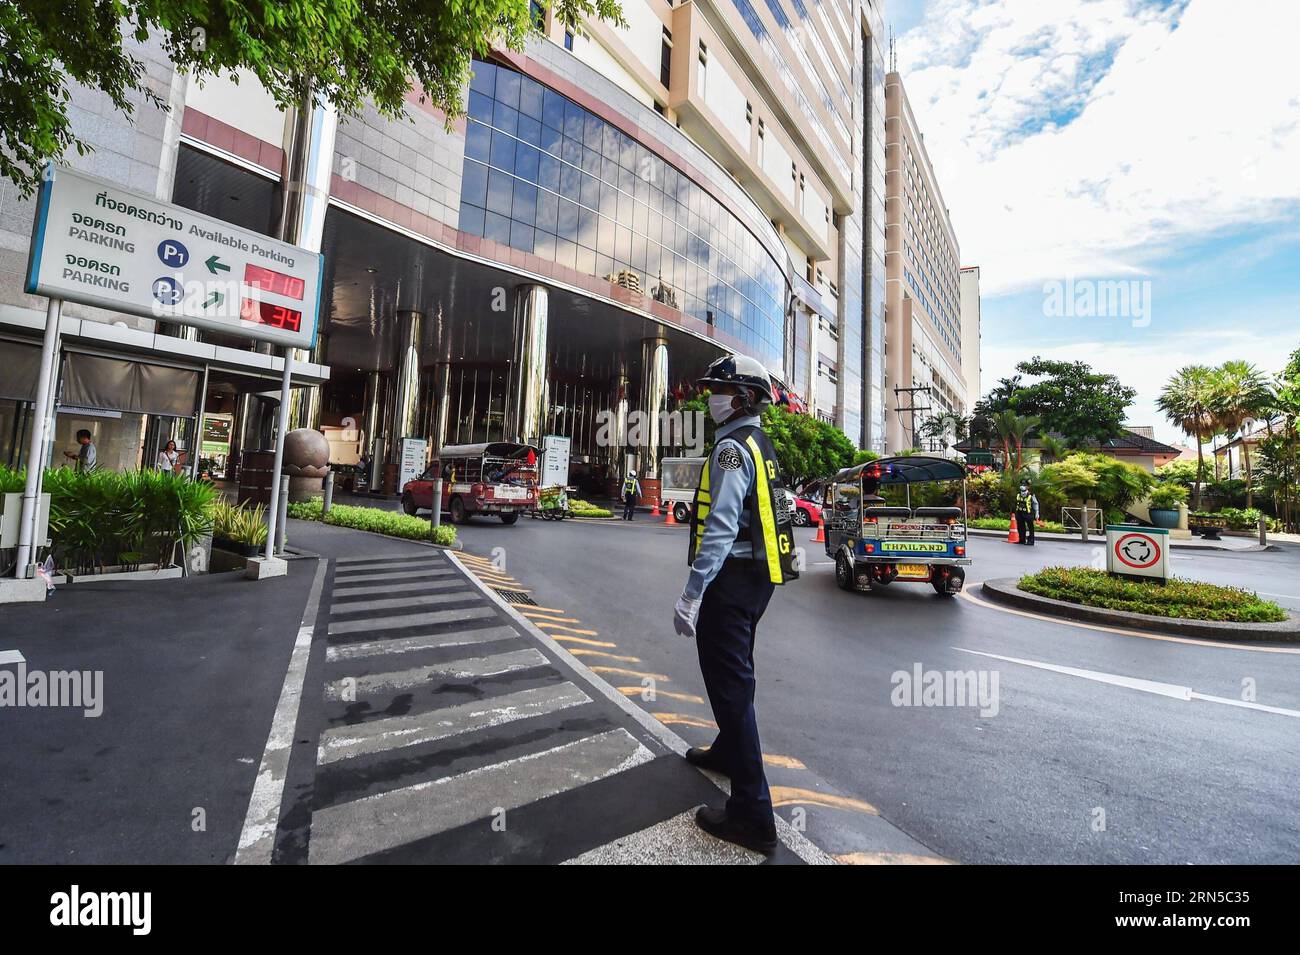 (150620) -- BANGKOK, 20 juin 2015 -- Un garde de sécurité porte un masque facial alors qu'il travaillait à l'hôpital international de Bumrungrad, où un homme de 75 ans d'un pays du Moyen-Orient diagnostiqué avec mers s'était rendu, dans la région de Sukhumvit à Bangkok, Thaïlande, le 20 juin 2015. Le ministère de la Santé publique de Thaïlande a confirmé jeudi le premier cas de syndrome respiratoire du Moyen-Orient (mers). A Bangkok, la capitale du pays et un centre de transport international, les citoyens et les voyageurs ont commencé à adopter des méthodes préventives telles que le port de masques protecteurs pour le visage. THAÏLANDE-BANGKOK Banque D'Images